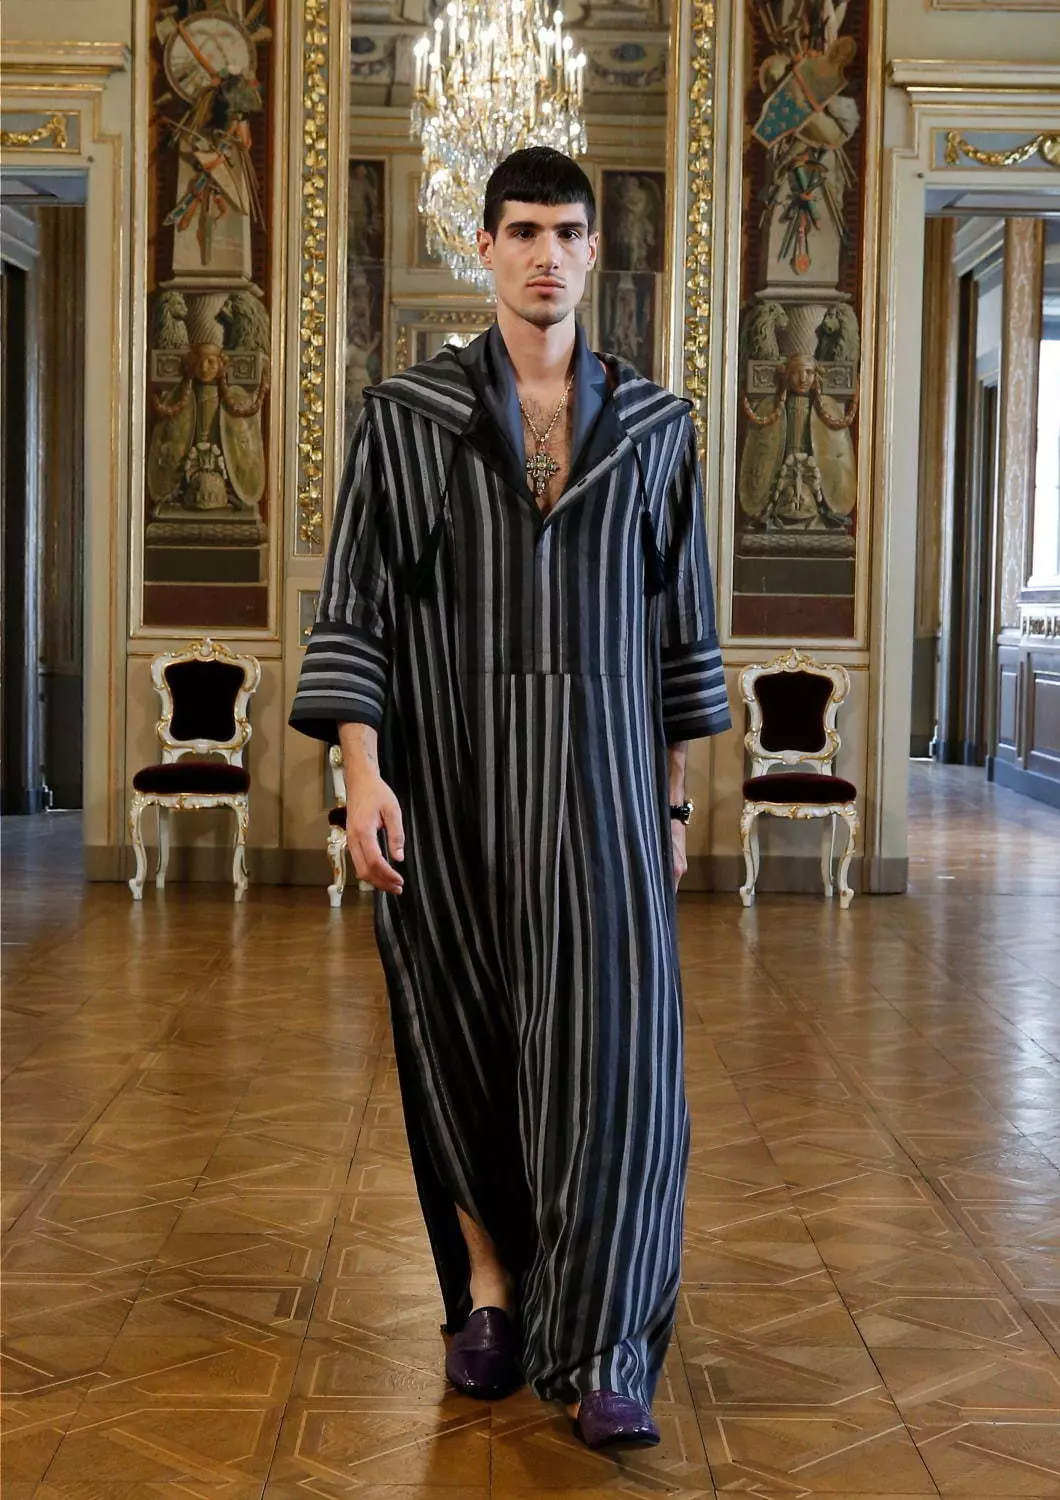 Colección Dolce & Gabbana Alta Sartoria Menswear Xullo 2020 53602_23